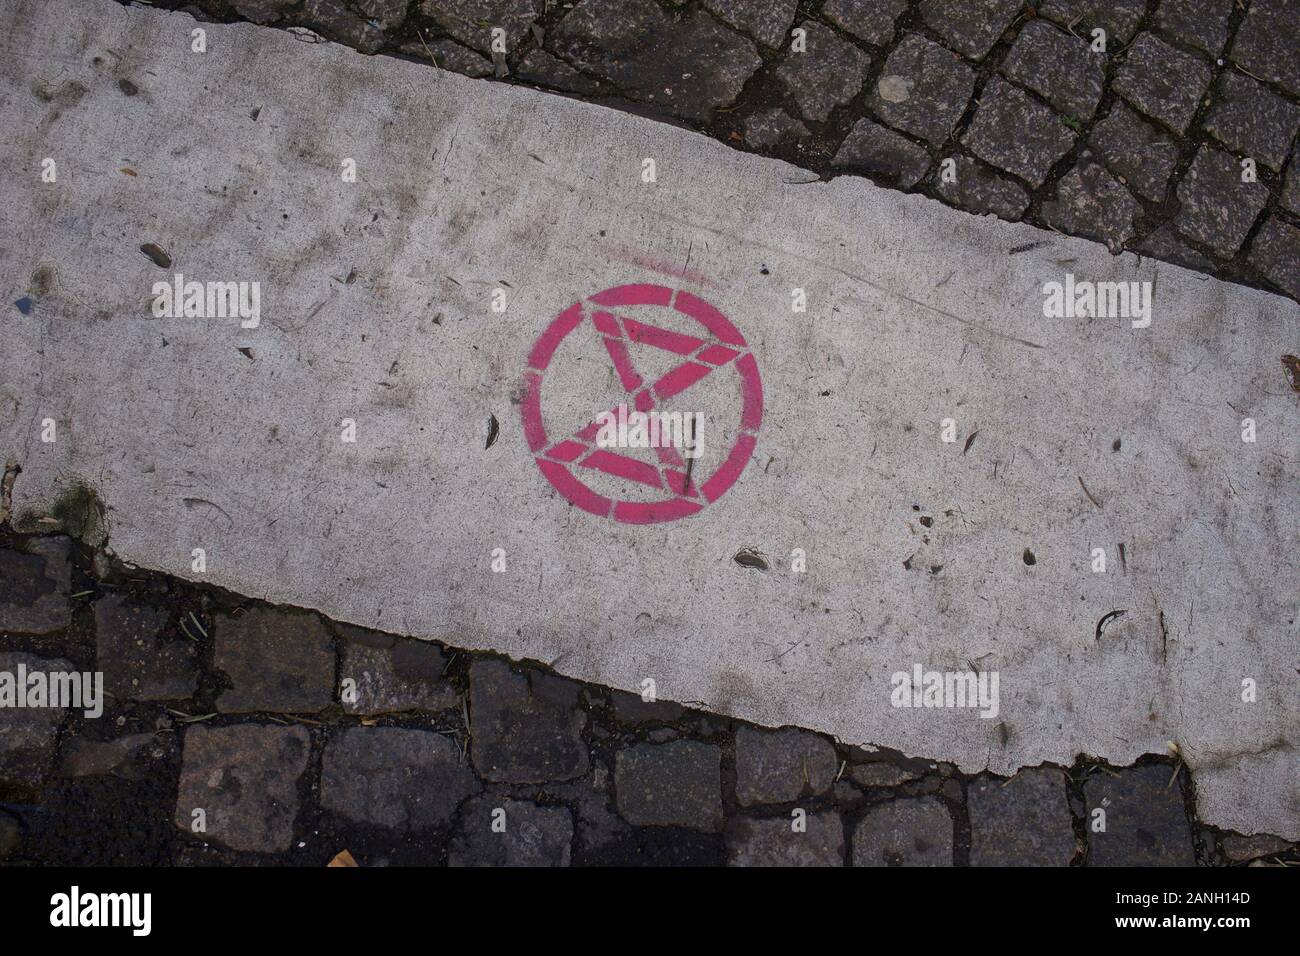 Estinzione della ribellione Logo, graffitti impresse sulla strada, Parigi, gennaio 2020 Foto Stock